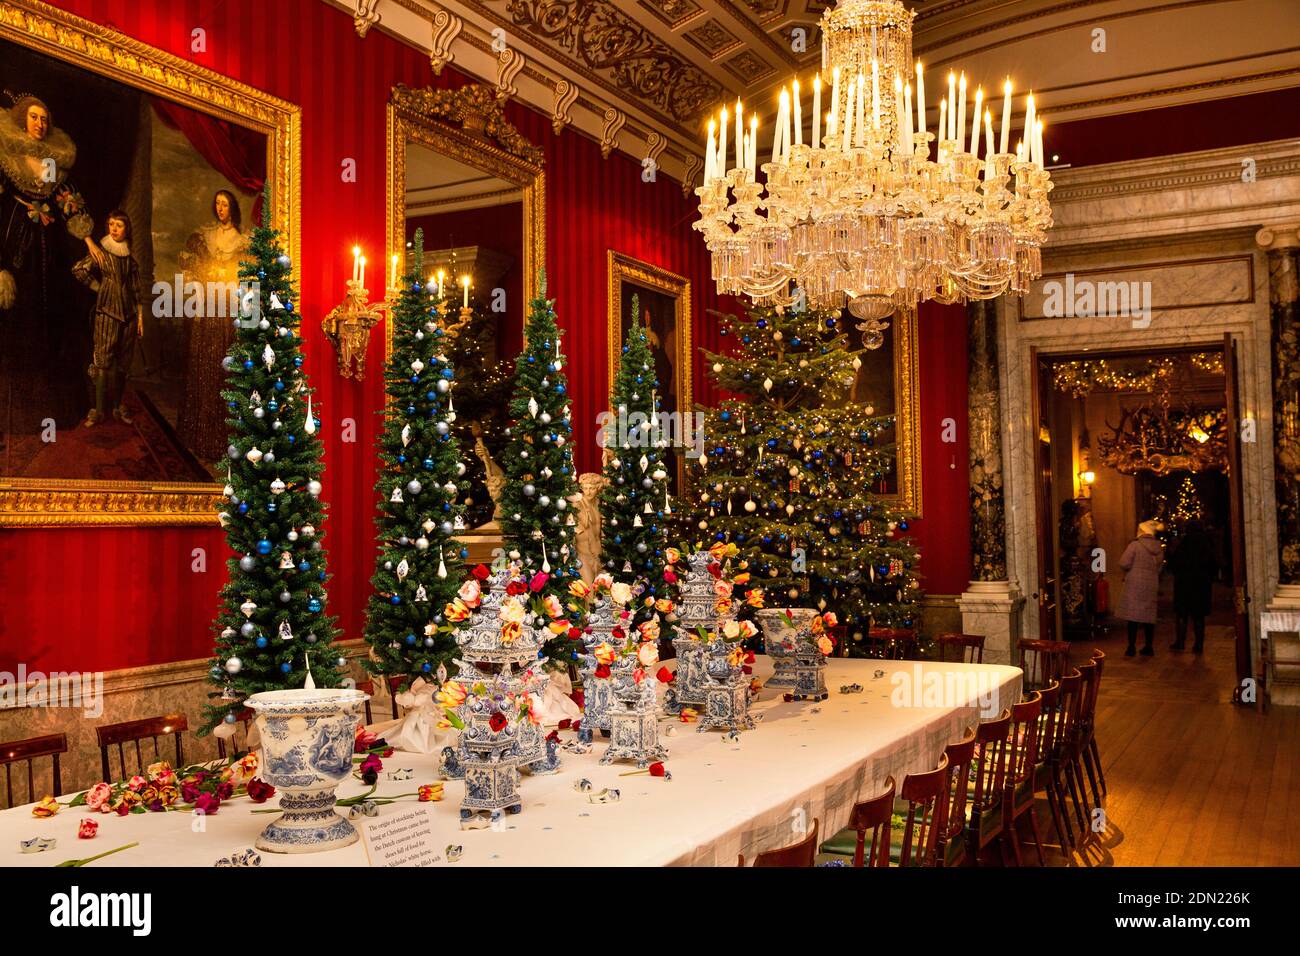 Regno Unito, Inghilterra, Derbyshire, Edensor, Chatsworth House Dining Room a Natale, Terre lontane, Olanda con delft tulip vasi sul tavolo Foto Stock